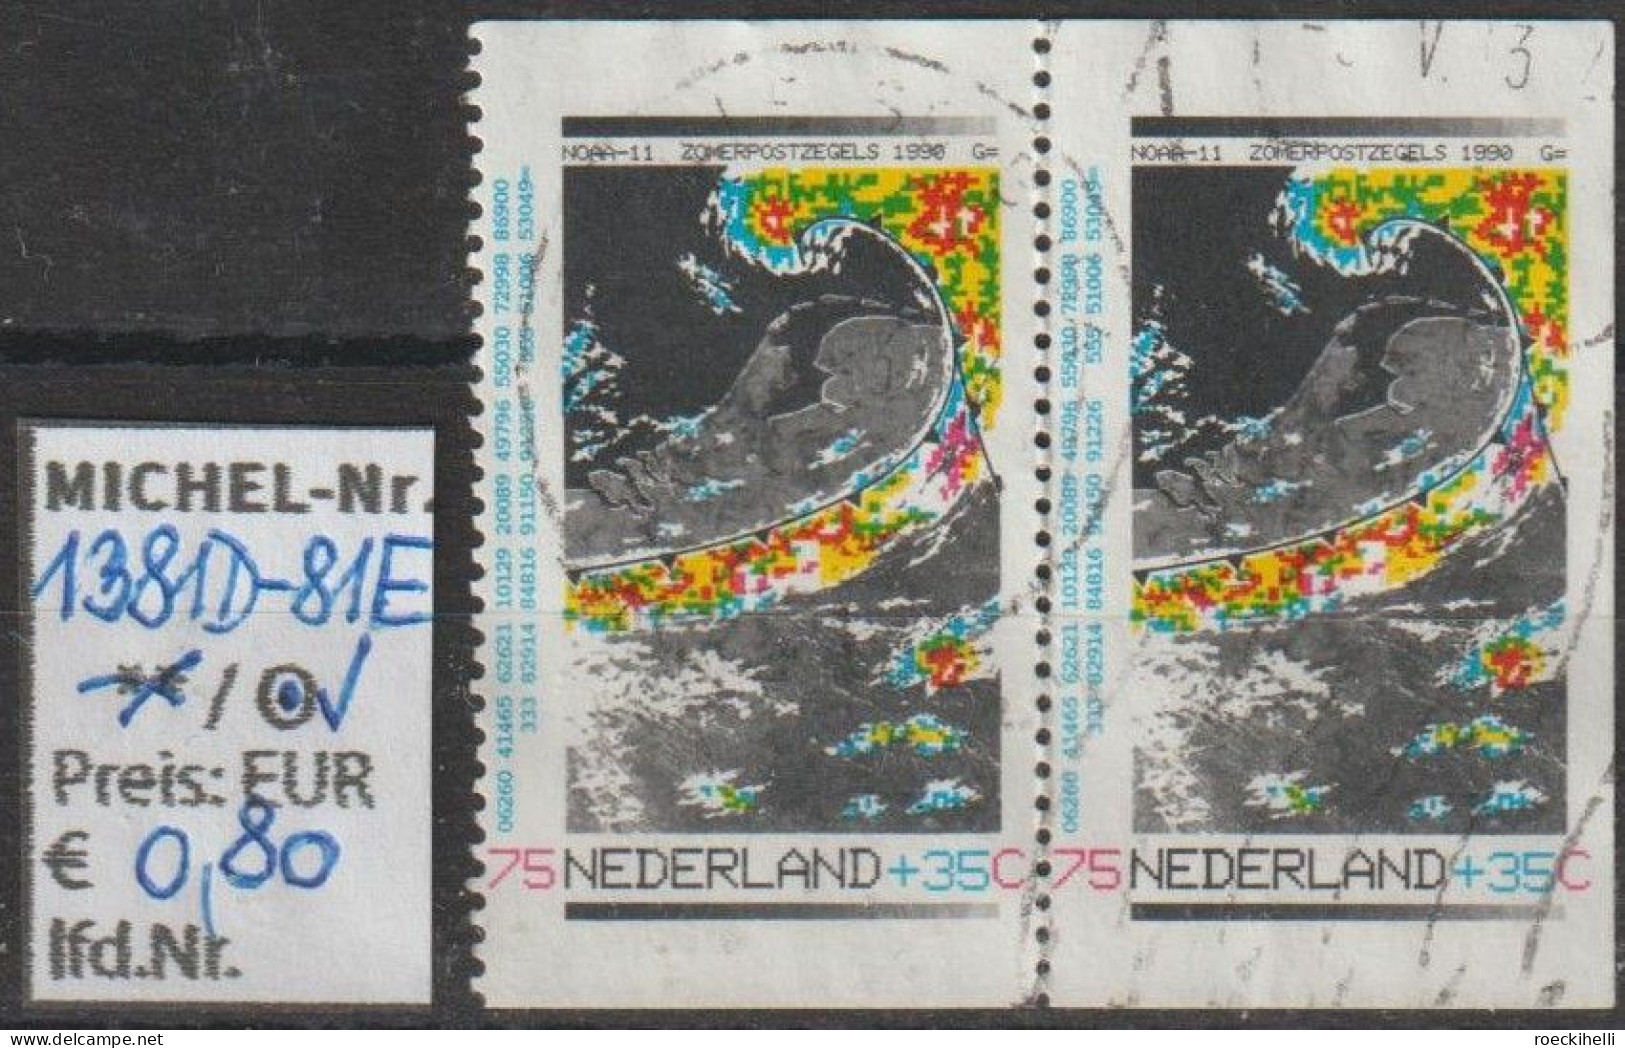 1990 - NIEDERLANDE - SM "Sommermarken - Das Wetter" 75+35 C Mehrf. - O  Gestempelt - S.Scan (1381D-81Eo Nl) - Gebraucht